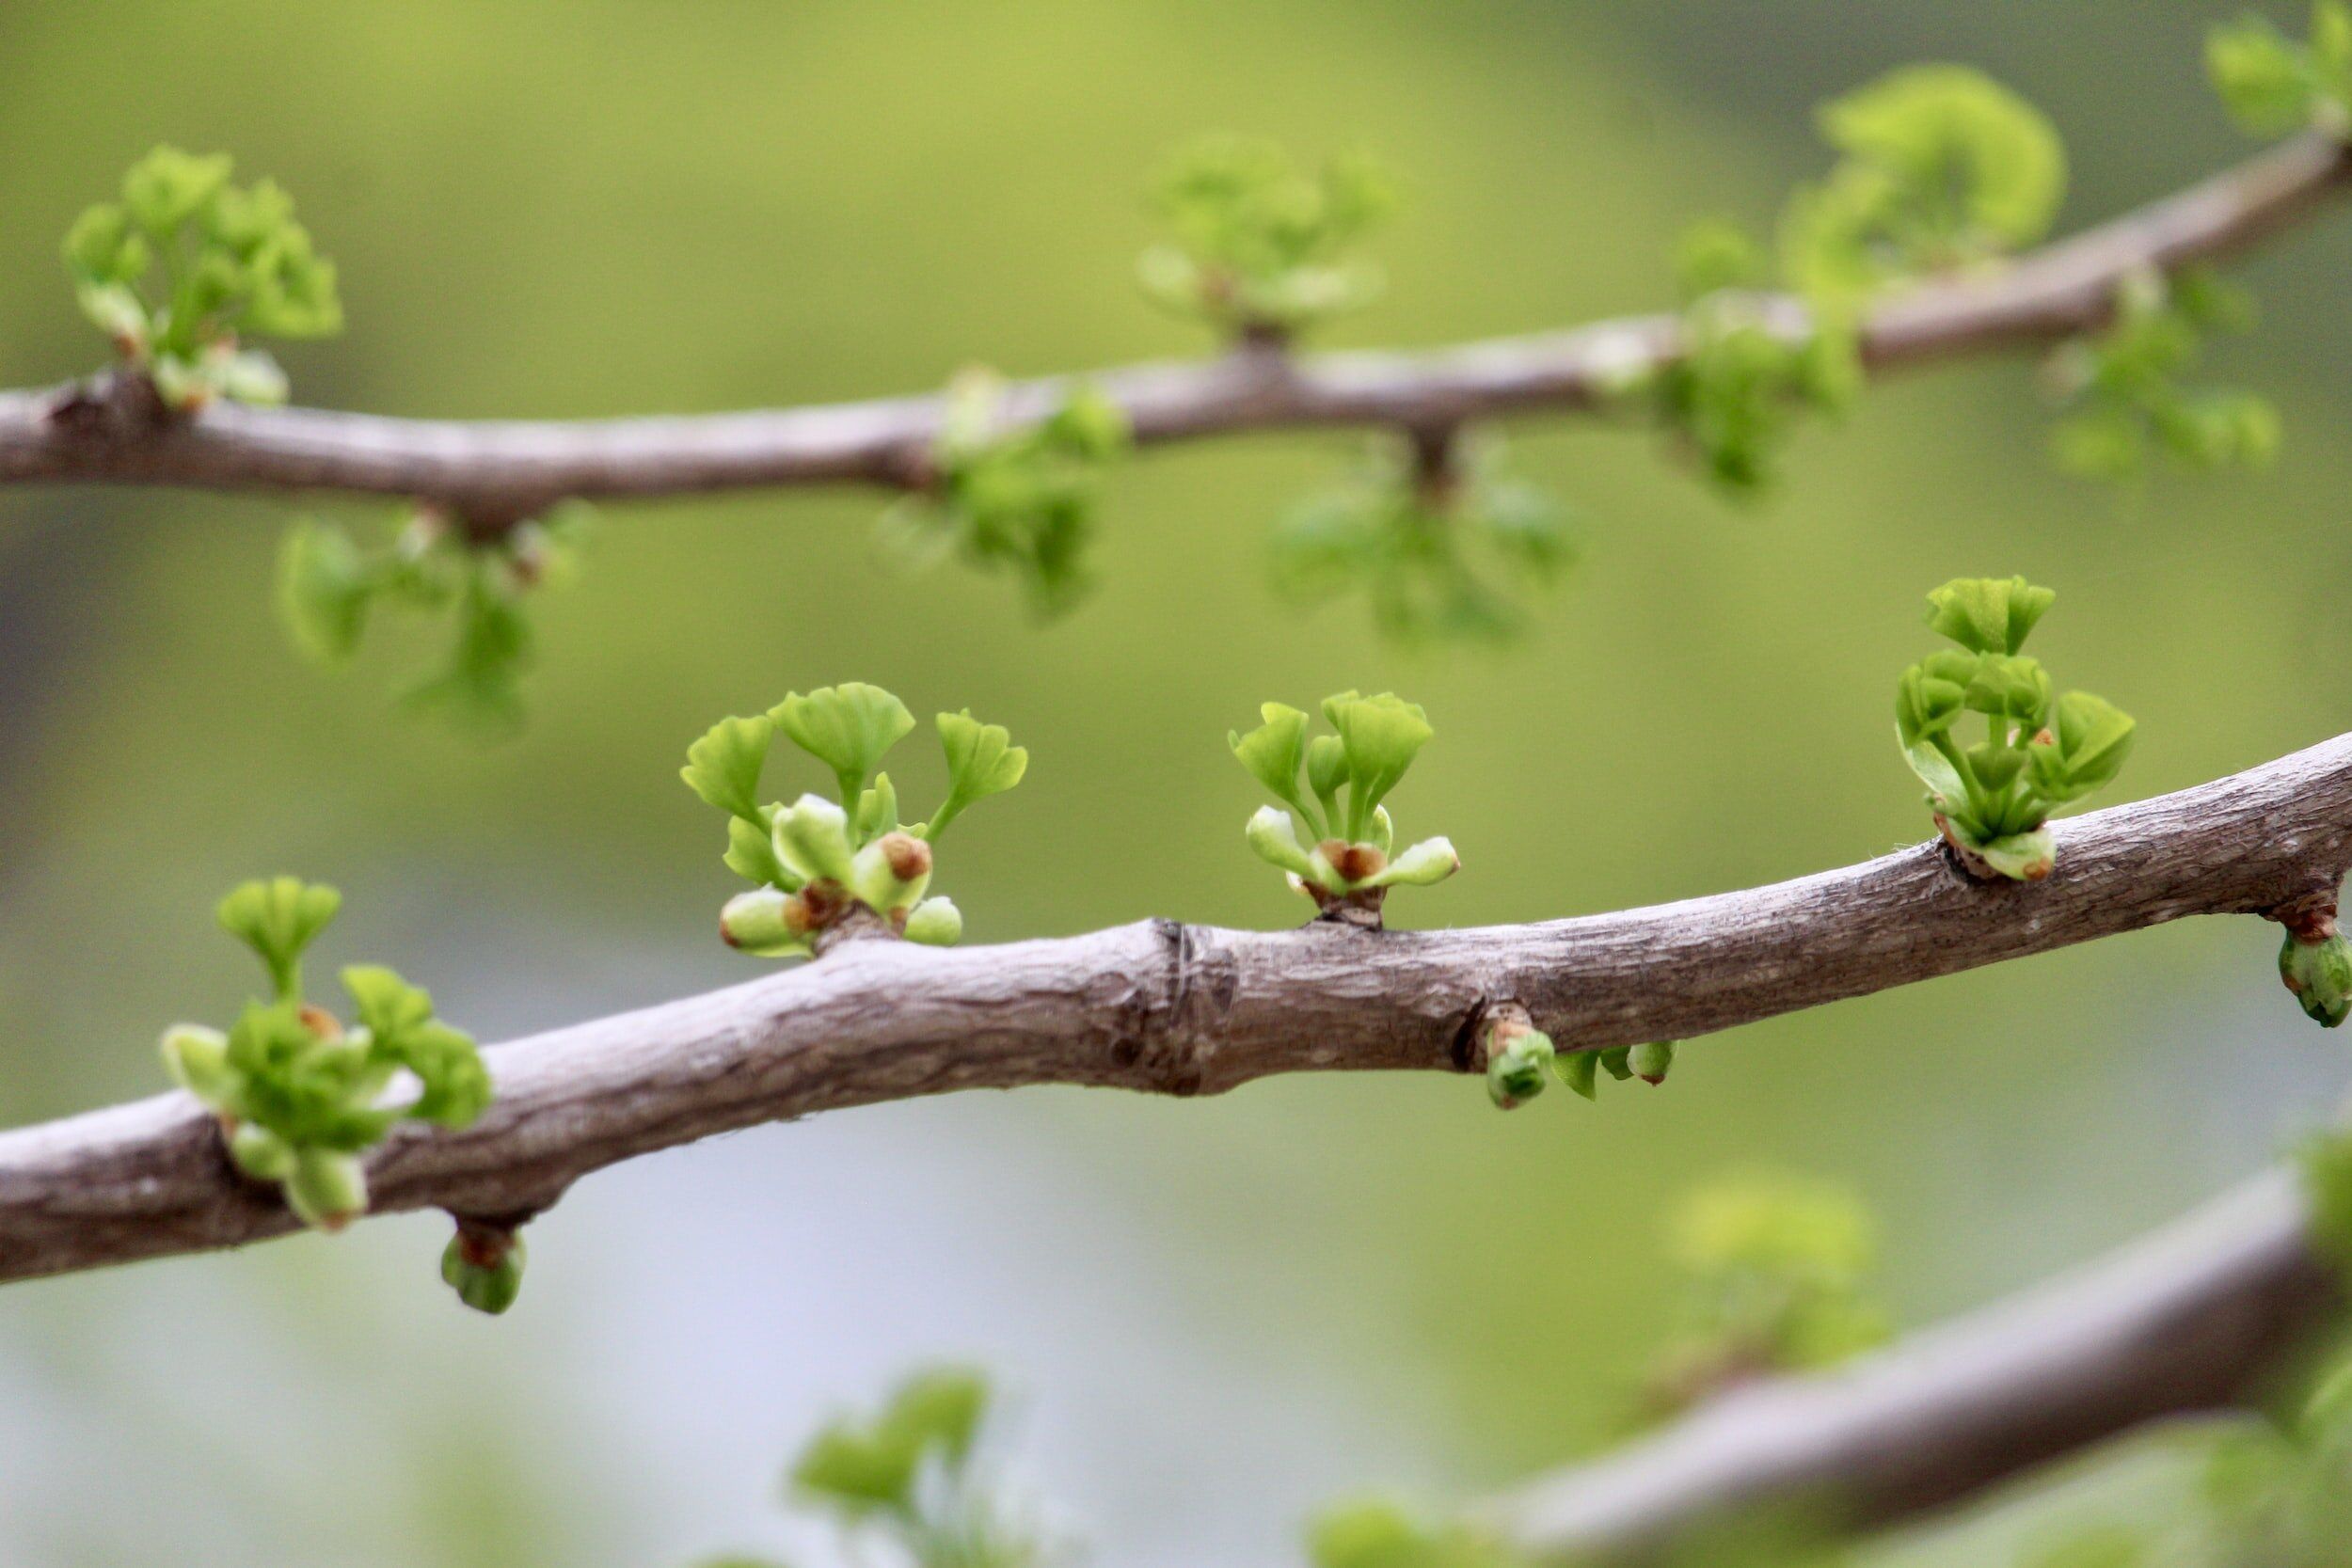 jeunes pousses de printemps sur une branche - Photo by Christina Winter on Unsplash